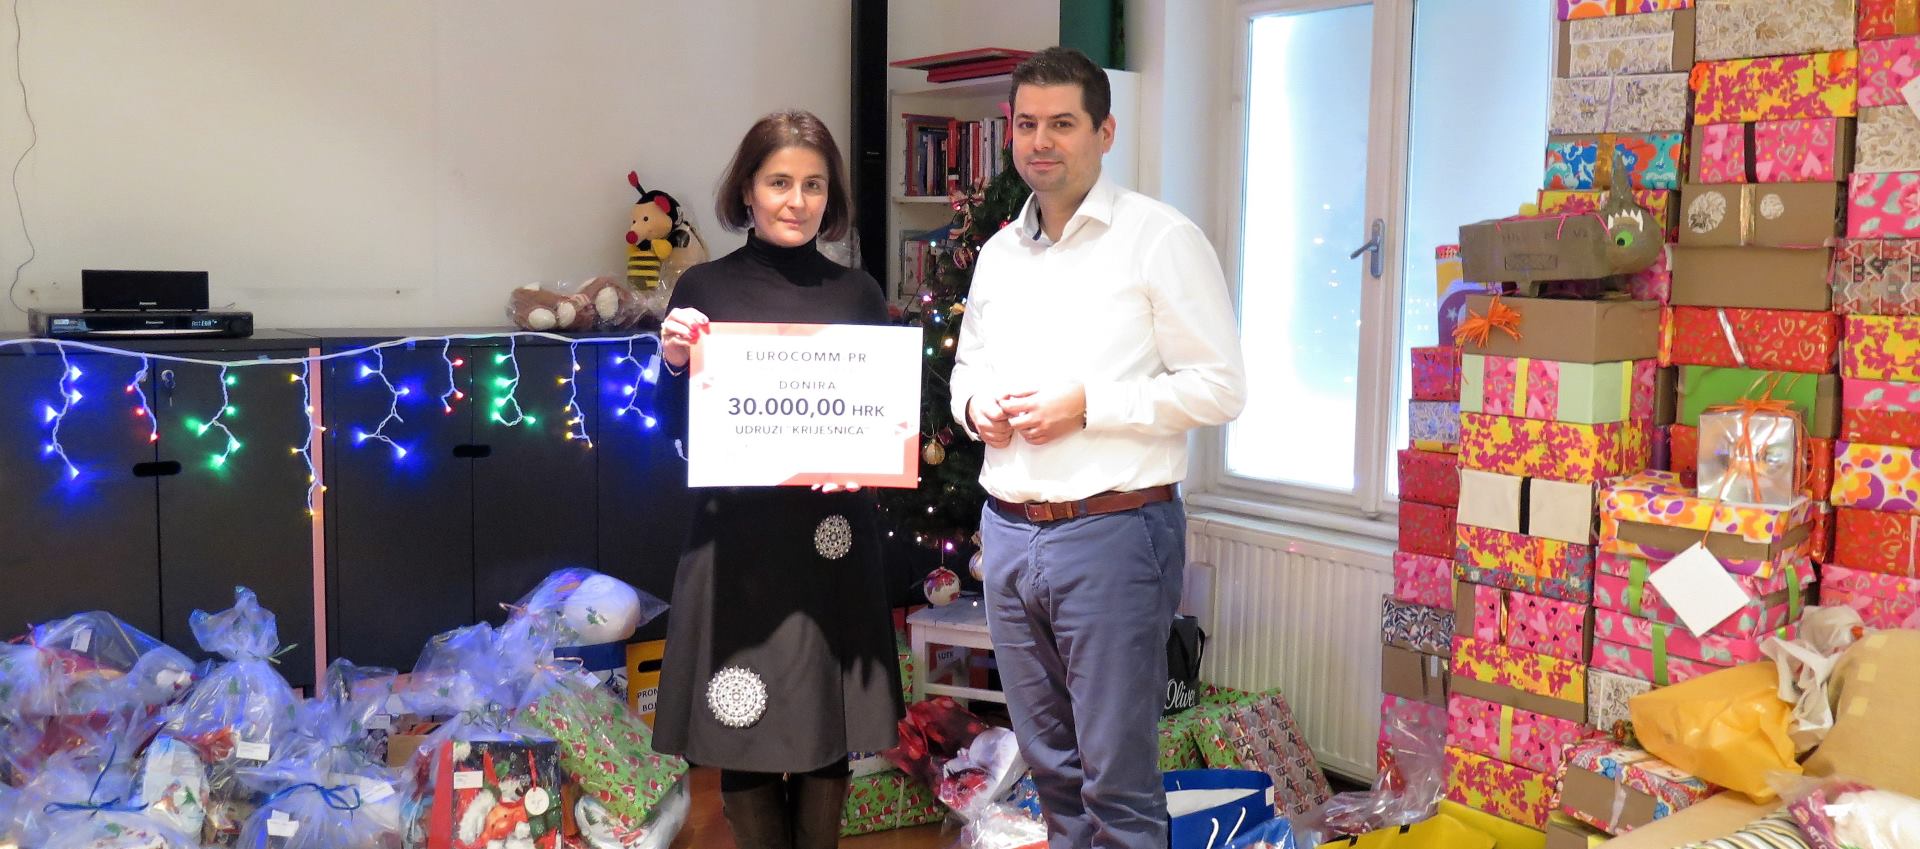 Inozemni ured Grada Beča u Zagrebu uručio donaciju Udruzi Krijesnica